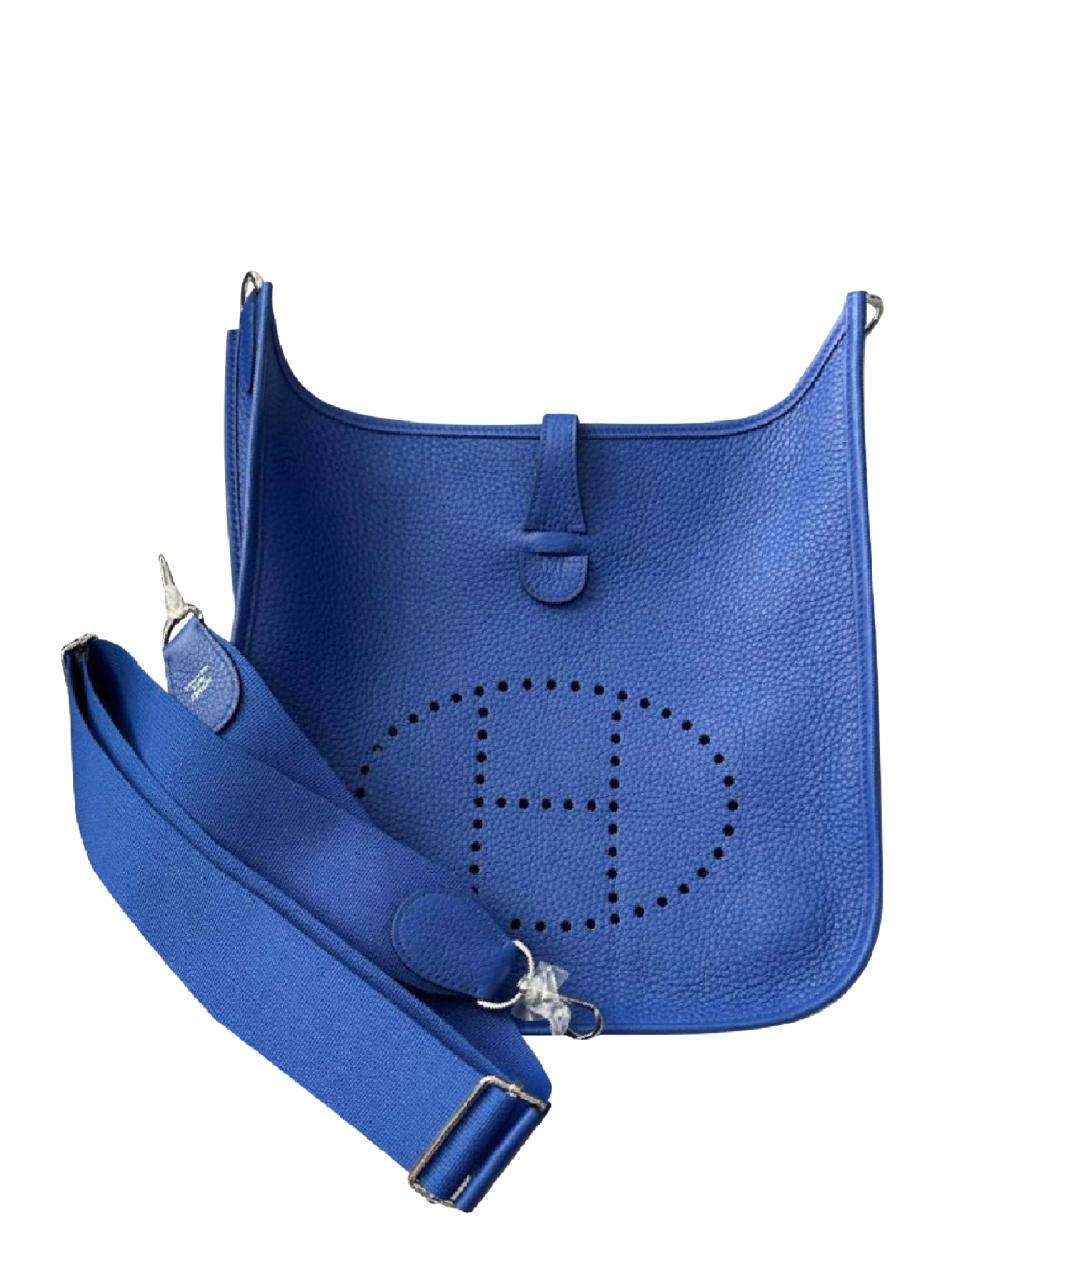 HERMES PRE-OWNED Синяя кожаная сумка через плечо, фото 1